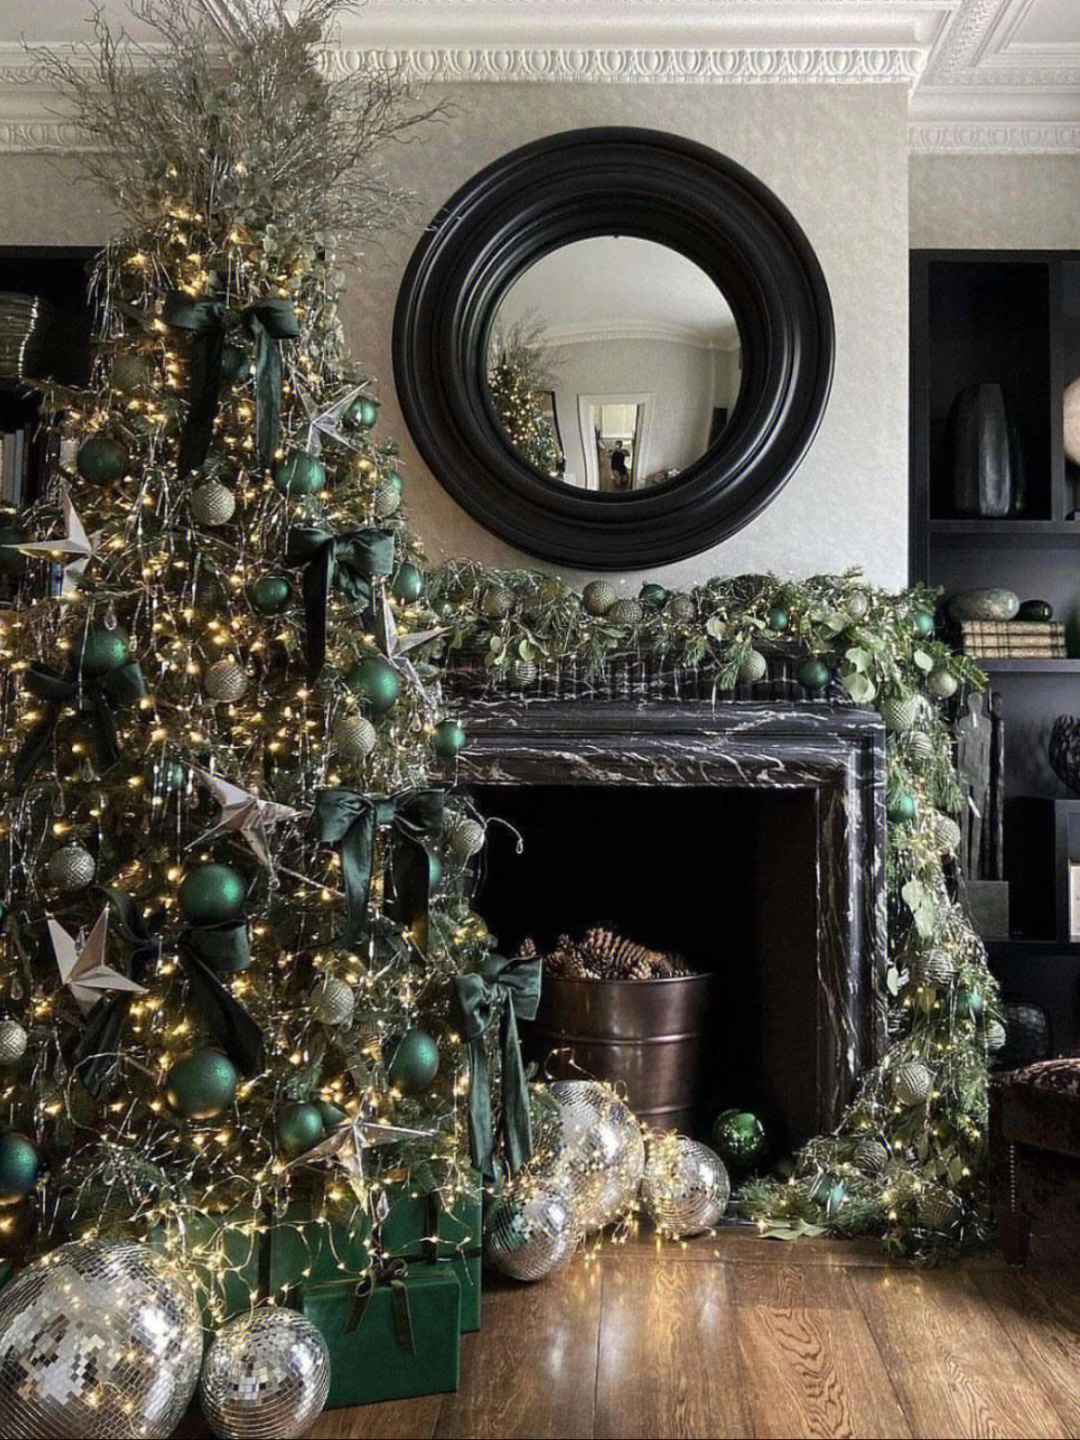 壁炉和圣诞树真的是绝配